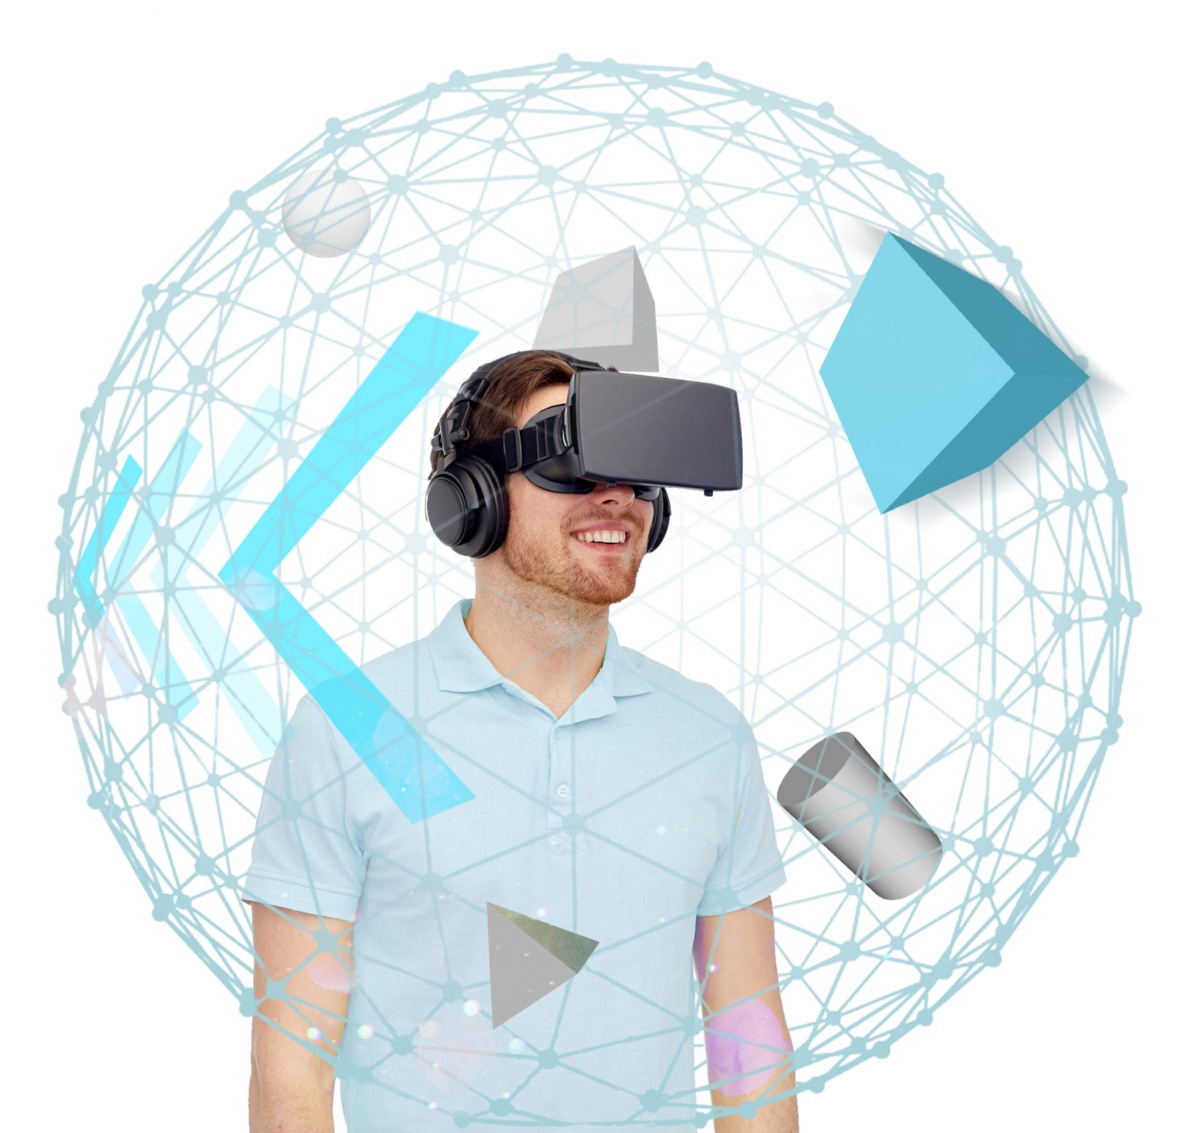 Vr тема. VR технологии. Устройства виртуальной реальности. Интерактивная виртуальная реальность. Дизайнер виртуальной реальности.